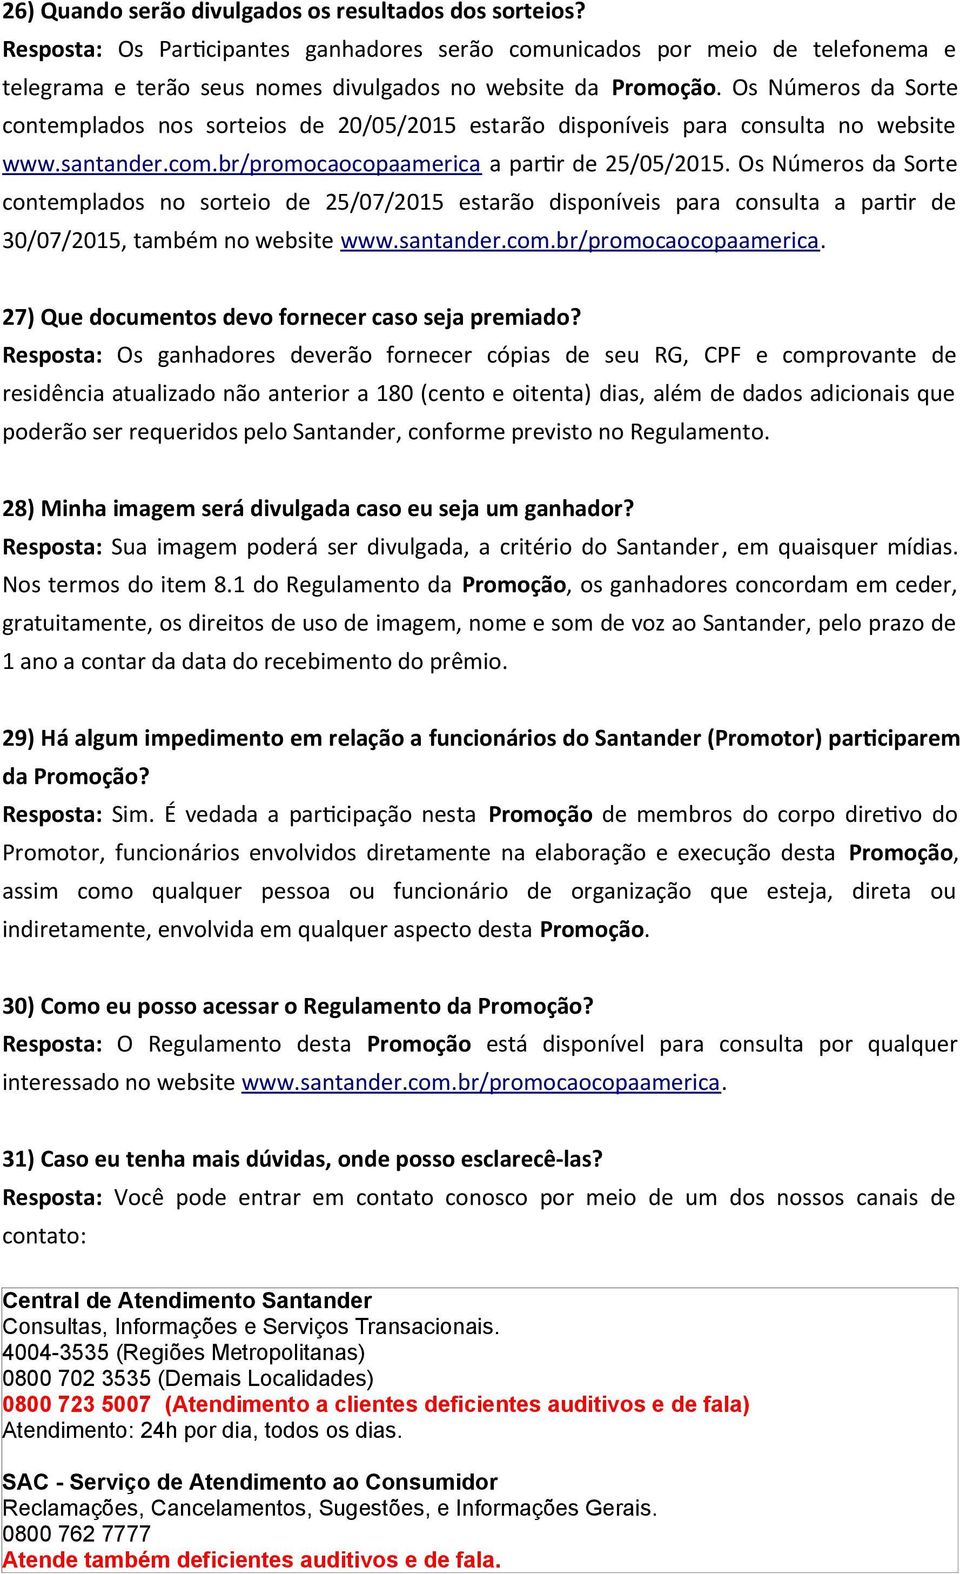 Os Números da Sorte contemplados no sorteio de 25/07/2015 estarão disponíveis para consulta a parvr de 30/07/2015, também no website www.santander.com.br/promocaocopaamerica.